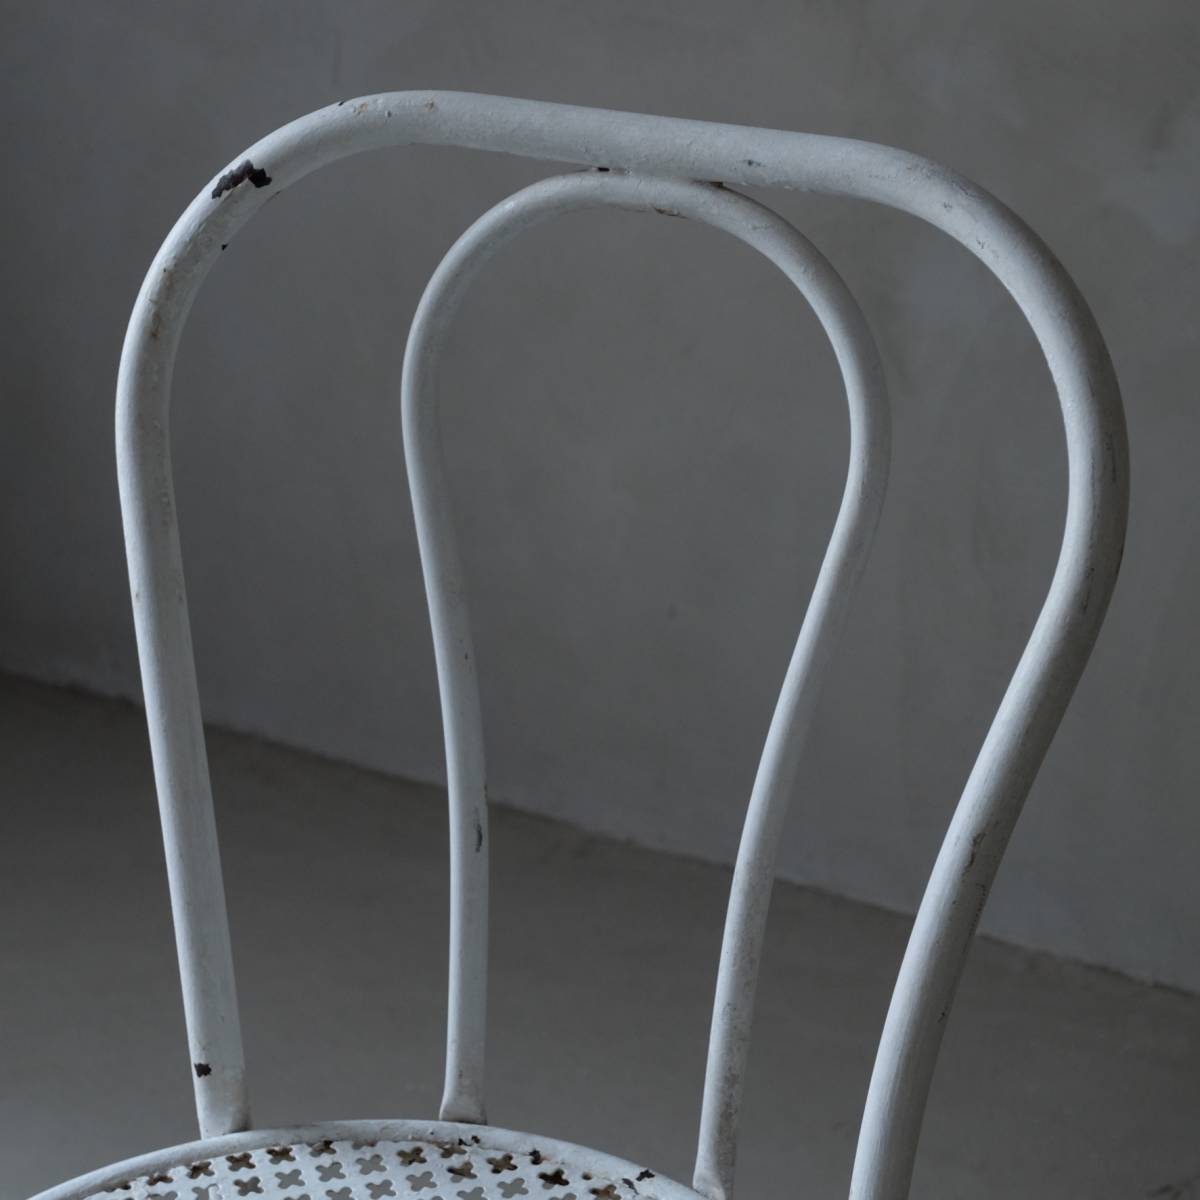 02750 white iron garden chair A / iron chair retro antique car Be bro can to gardening 